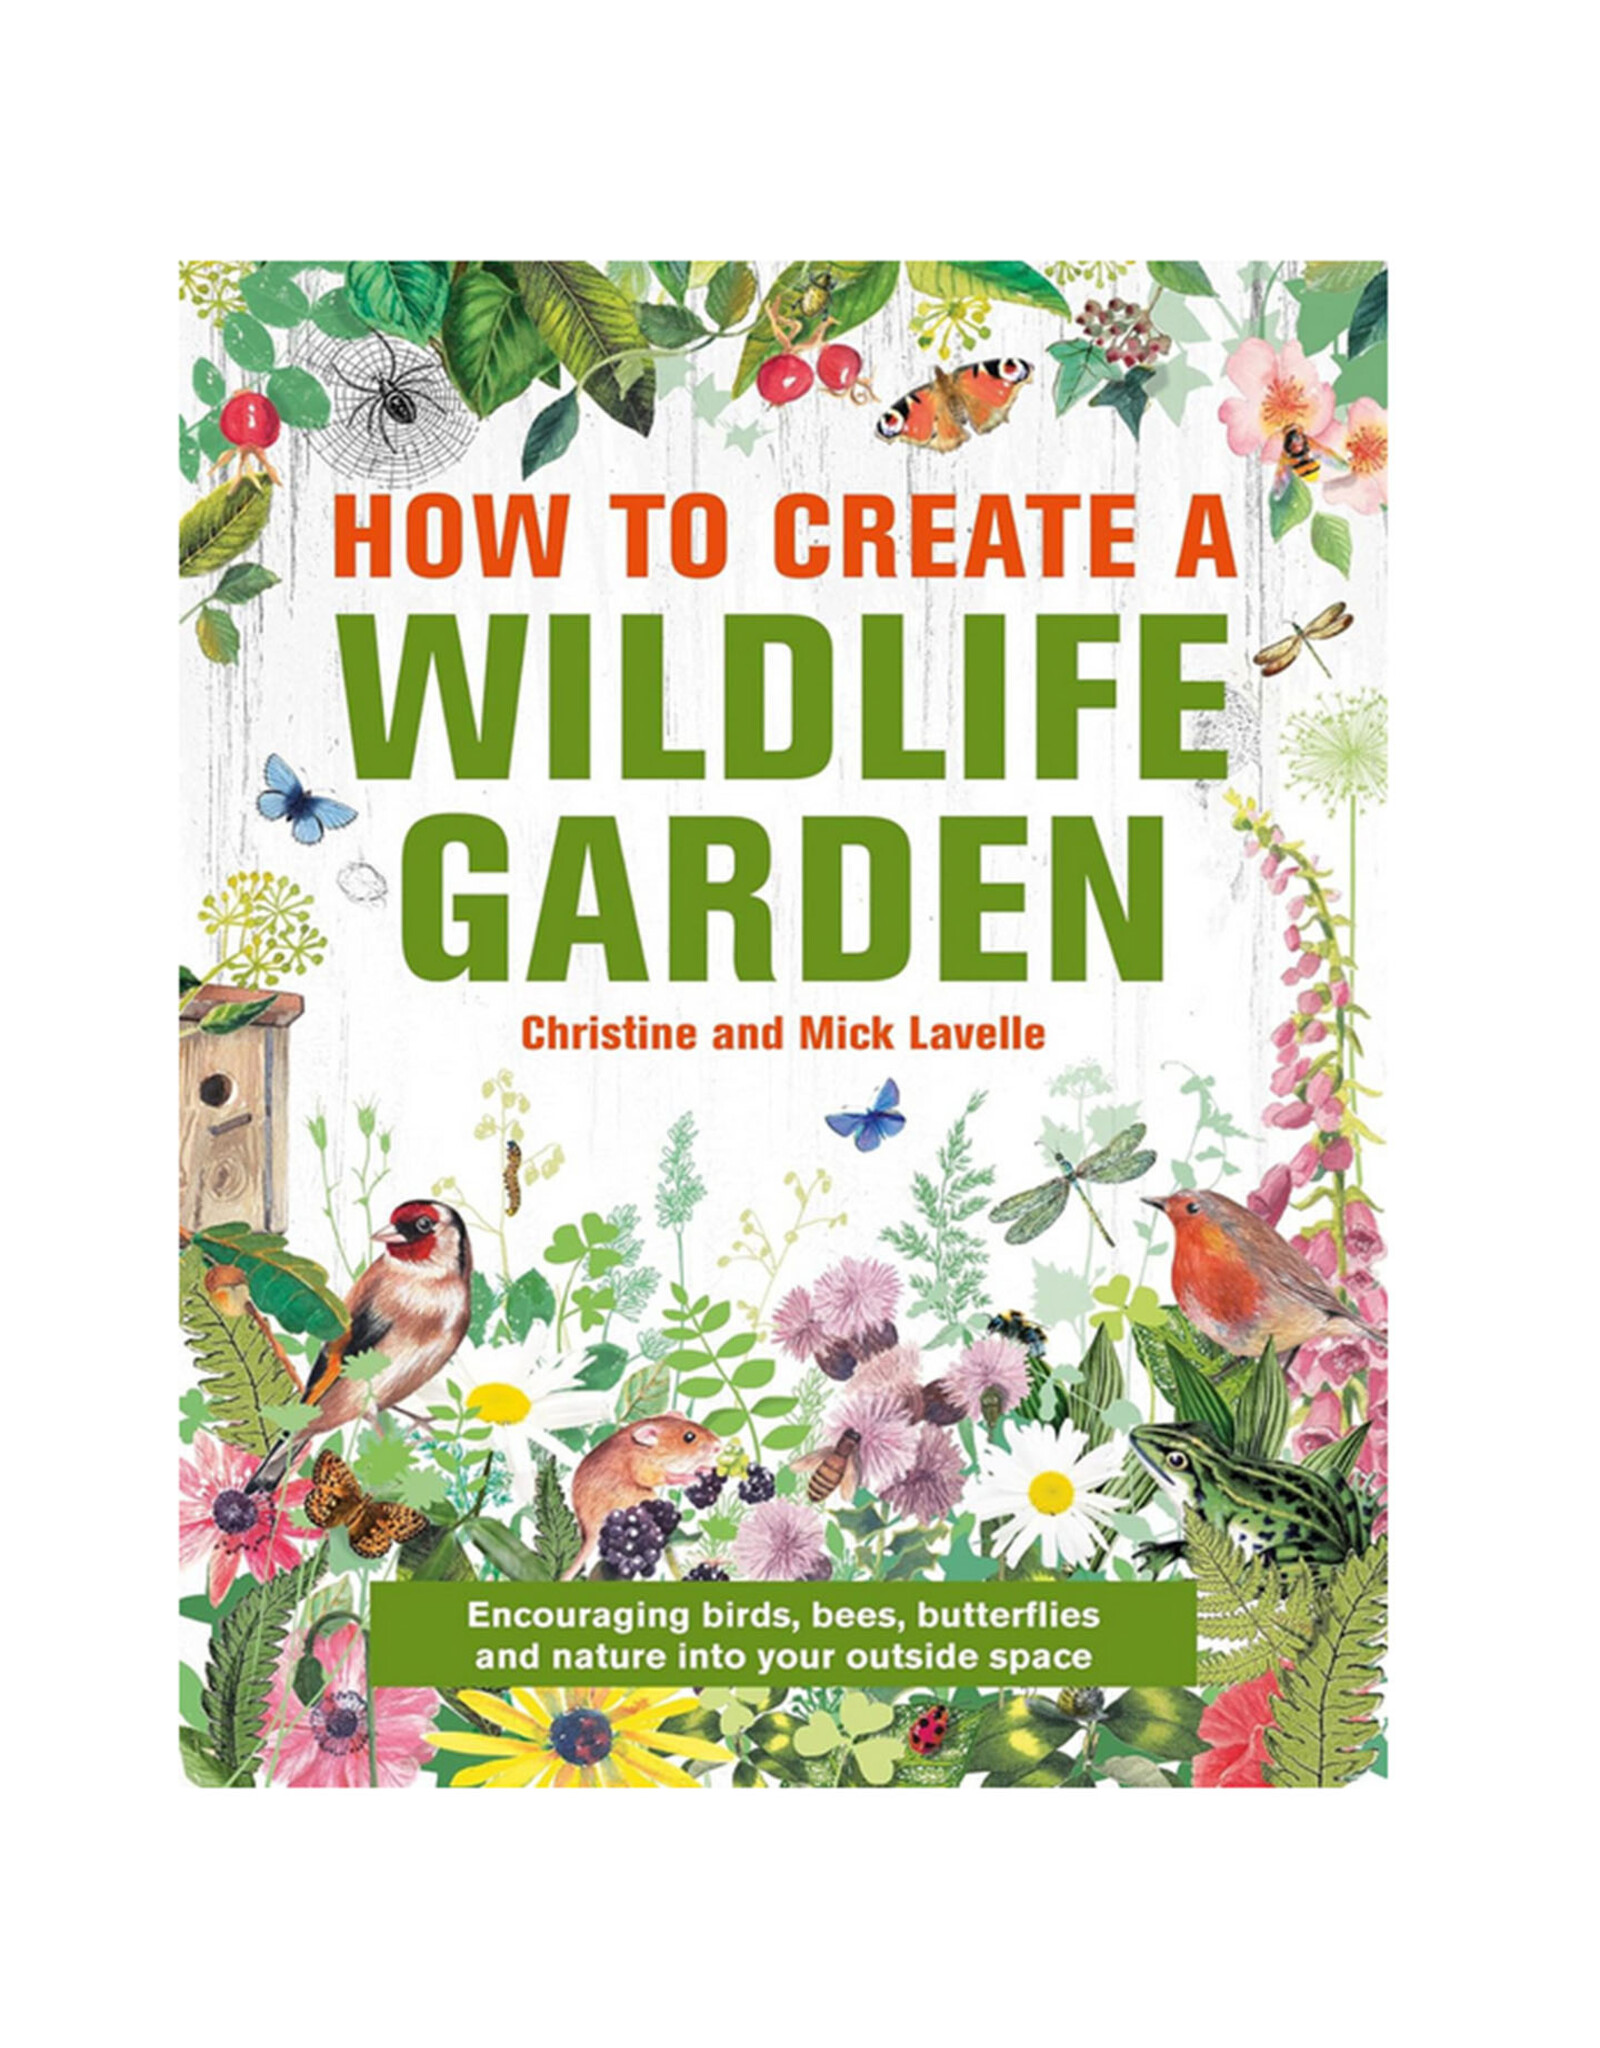 How To Create a Wildlife Garden